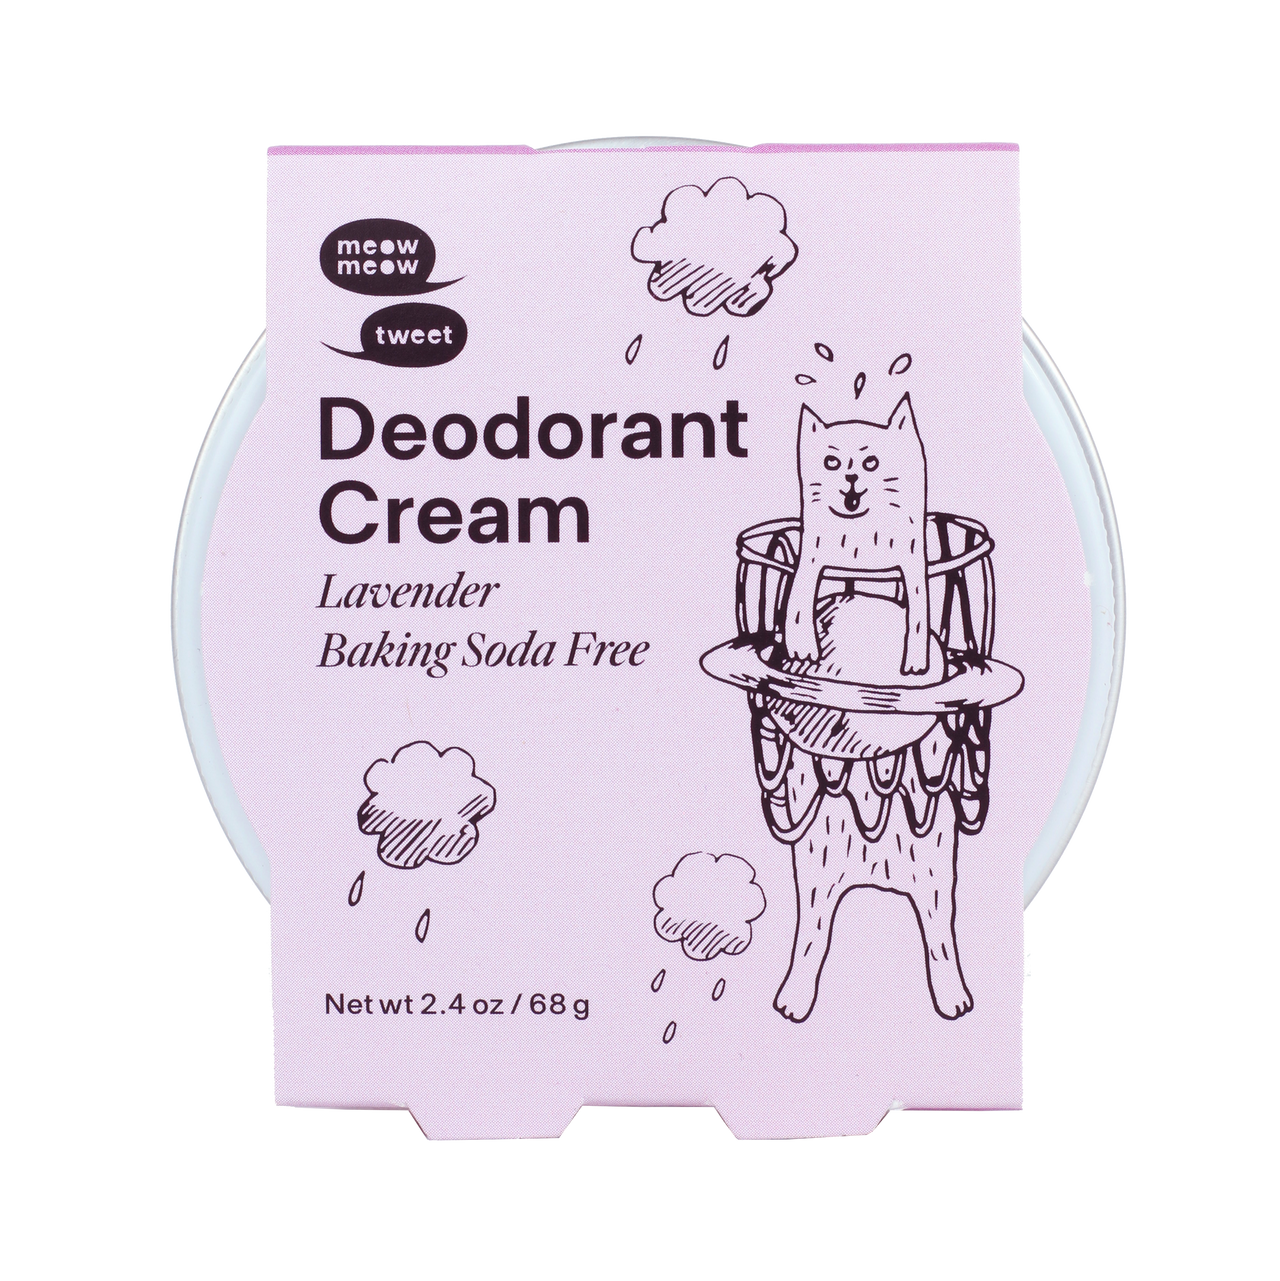 Deodorant Cream - Lavender (Baking Soda Free)